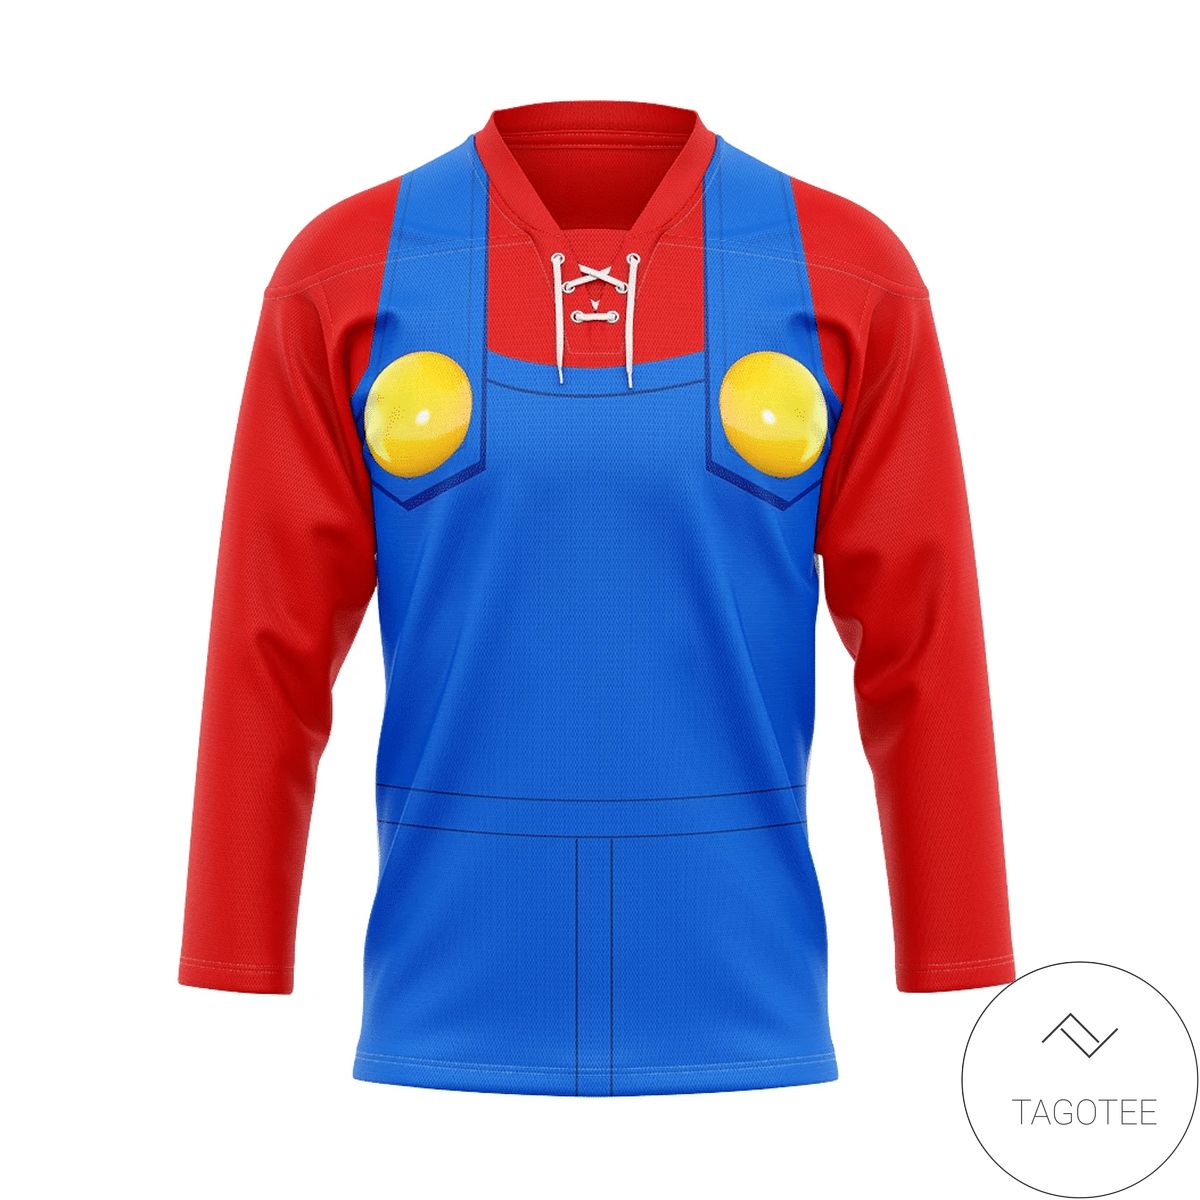 Mario Custom Hockey Jersey